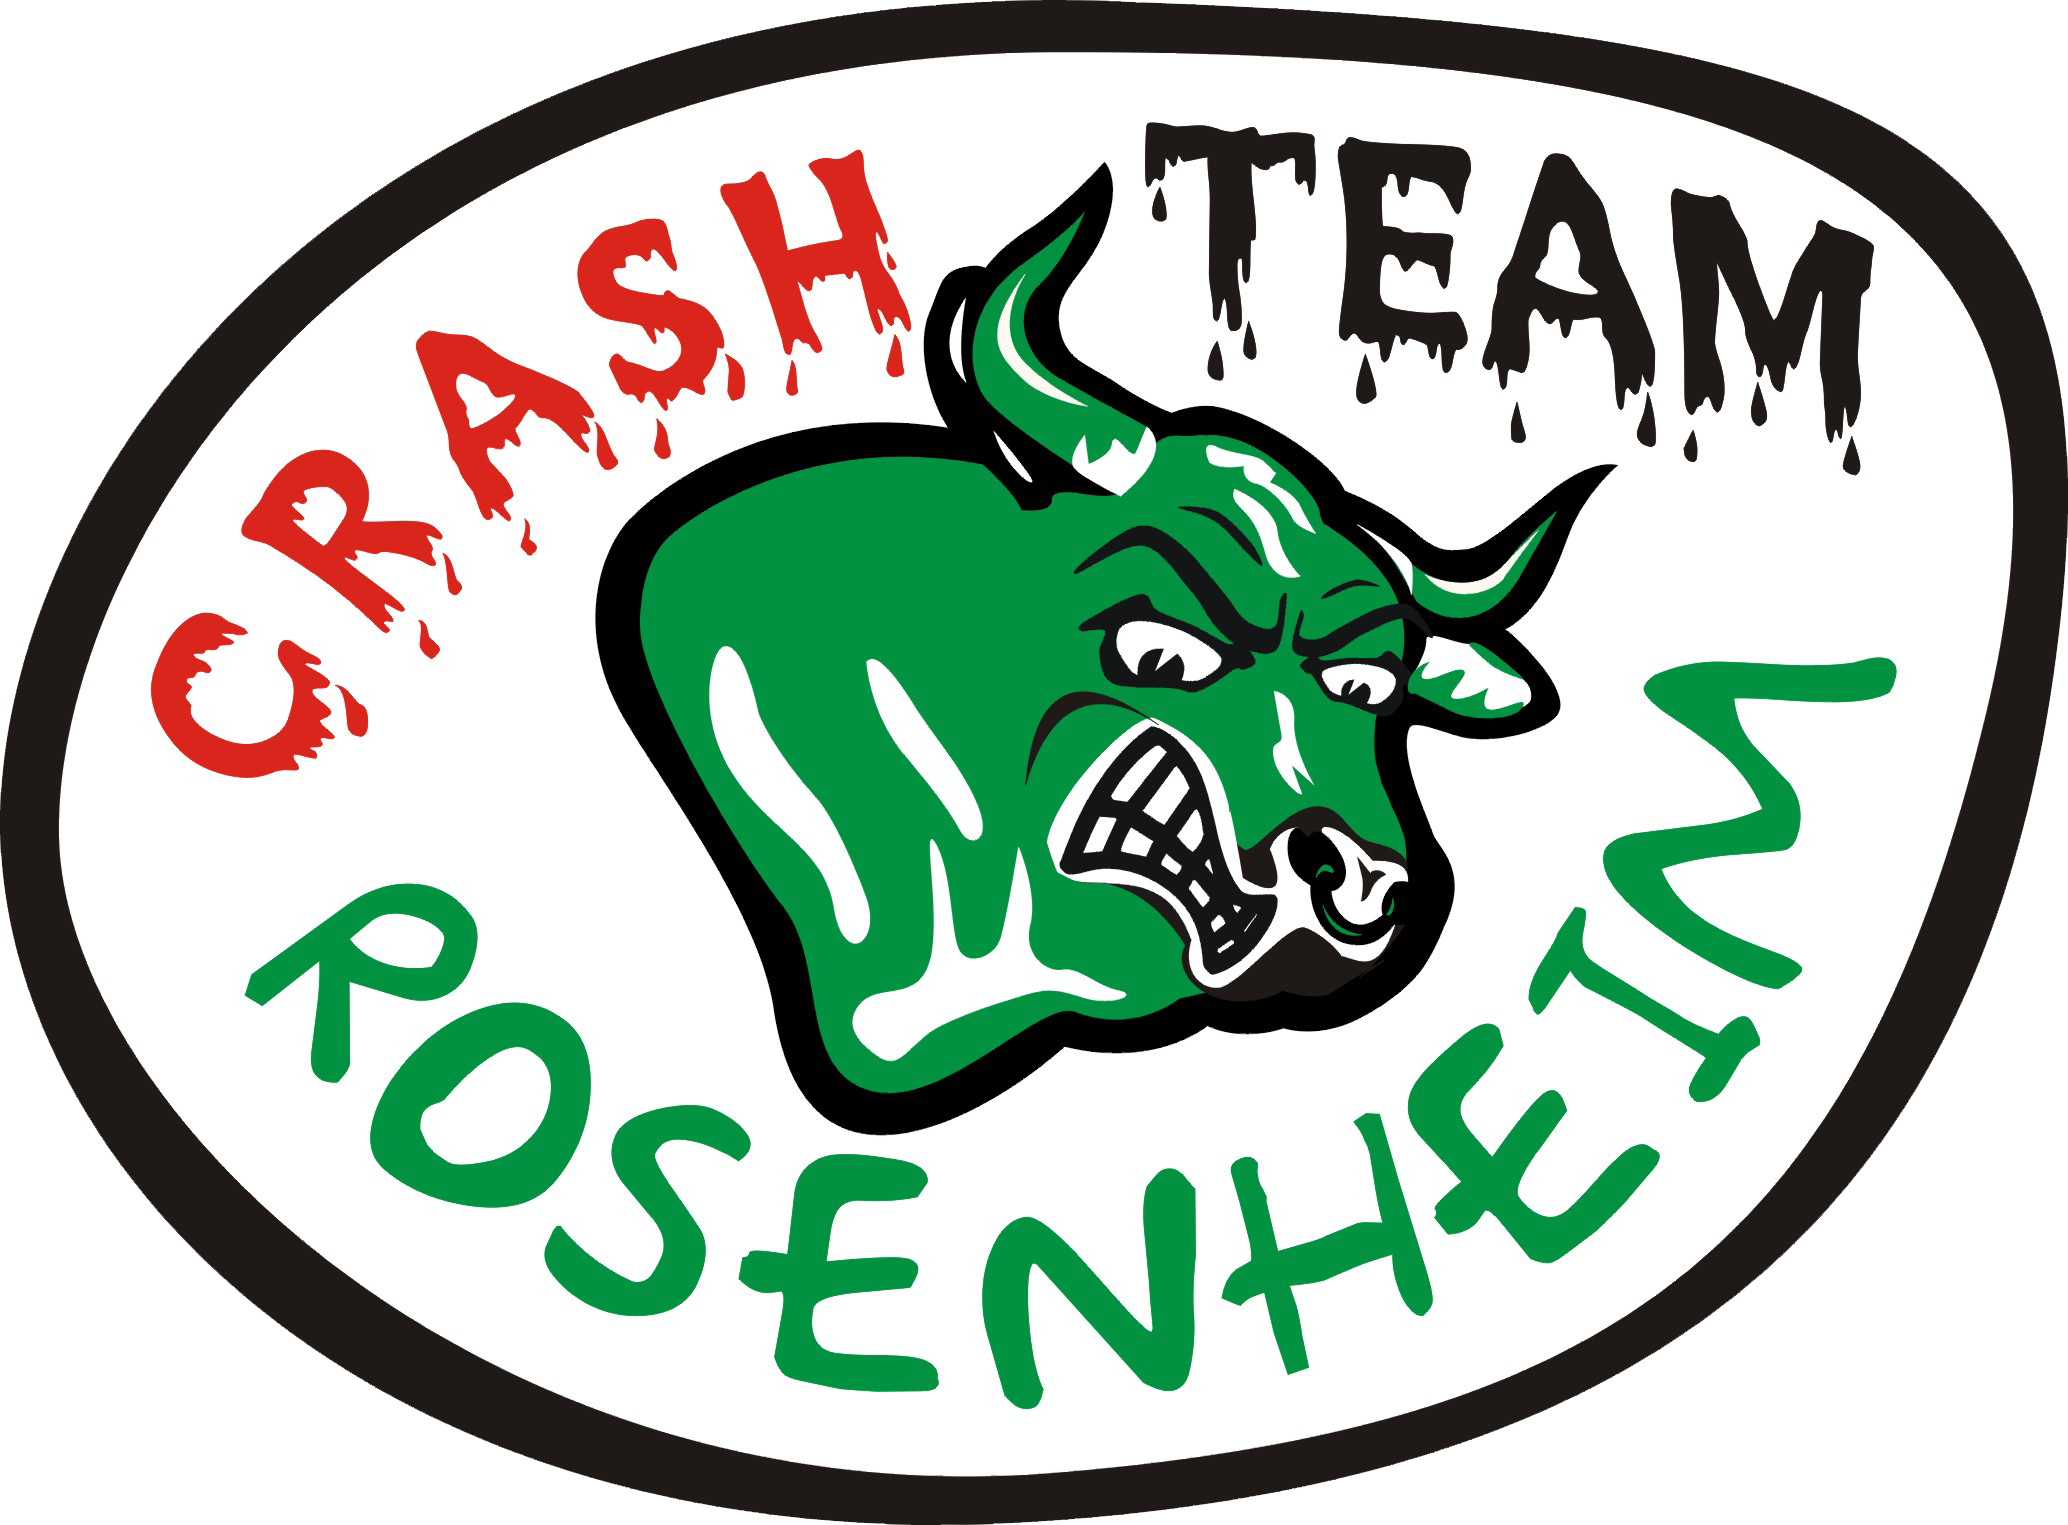 Eishockeyfanclub Crashteam Rosenheim